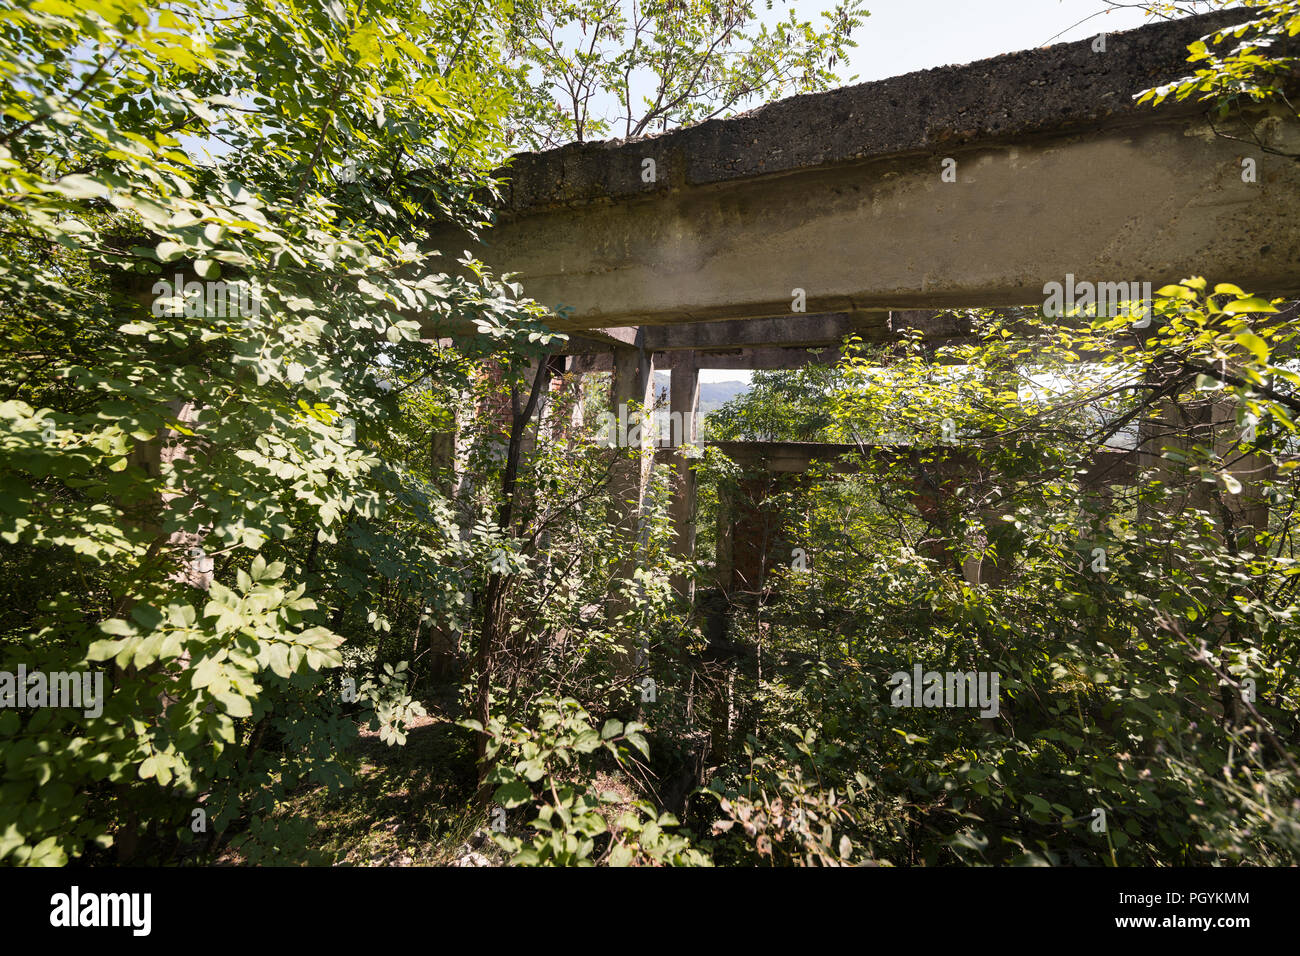 Demeure et ruine de l'ancien régime communiste dans le camp de travail et carrière avec memorial 'Camp' près de Lovetch Lovetch Banque D'Images